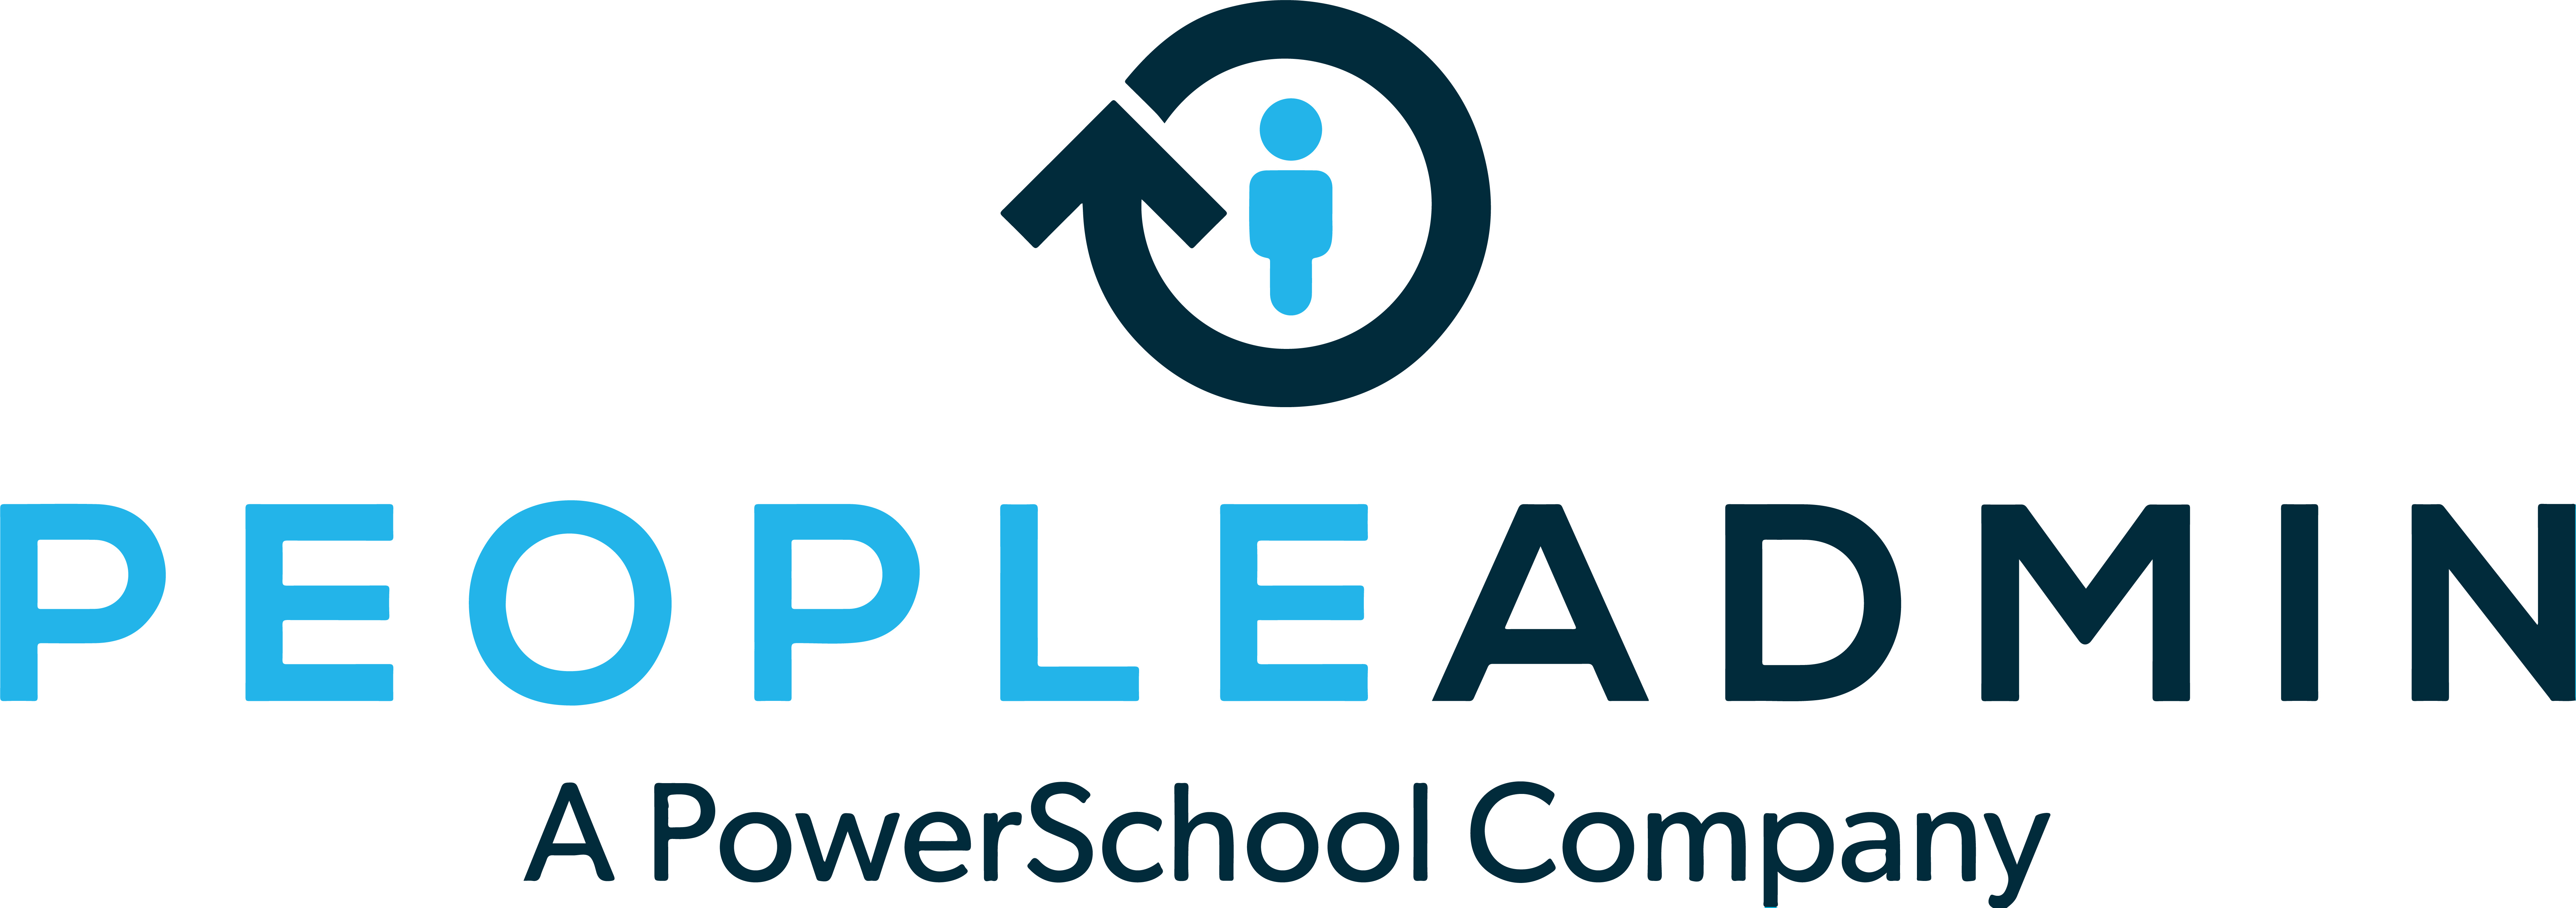 PeopleAdmin A PowerSchool Company